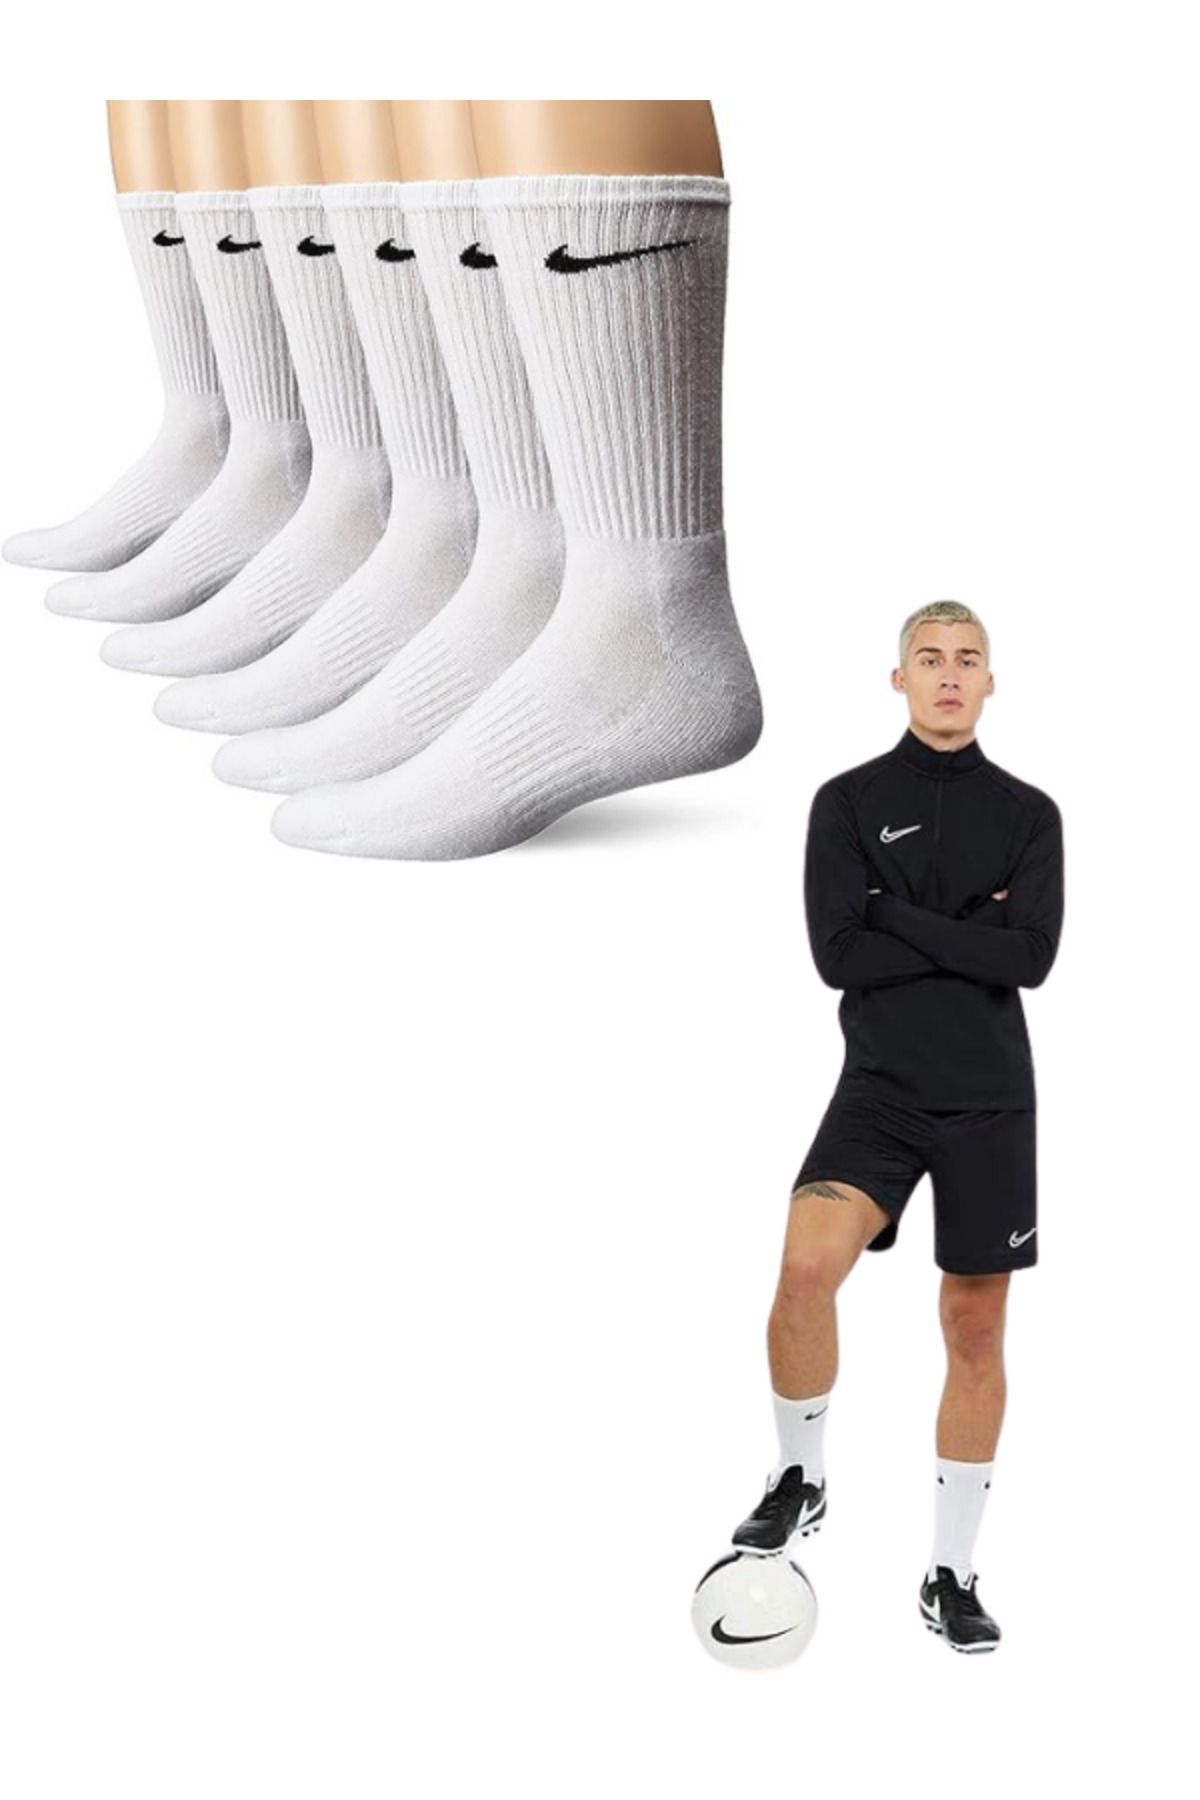 Socks Sirius 6 Çift Penye Kumaş Antrenman Spor Beyaz Futbol Maç Halı Saha Koşu Çorap Seti